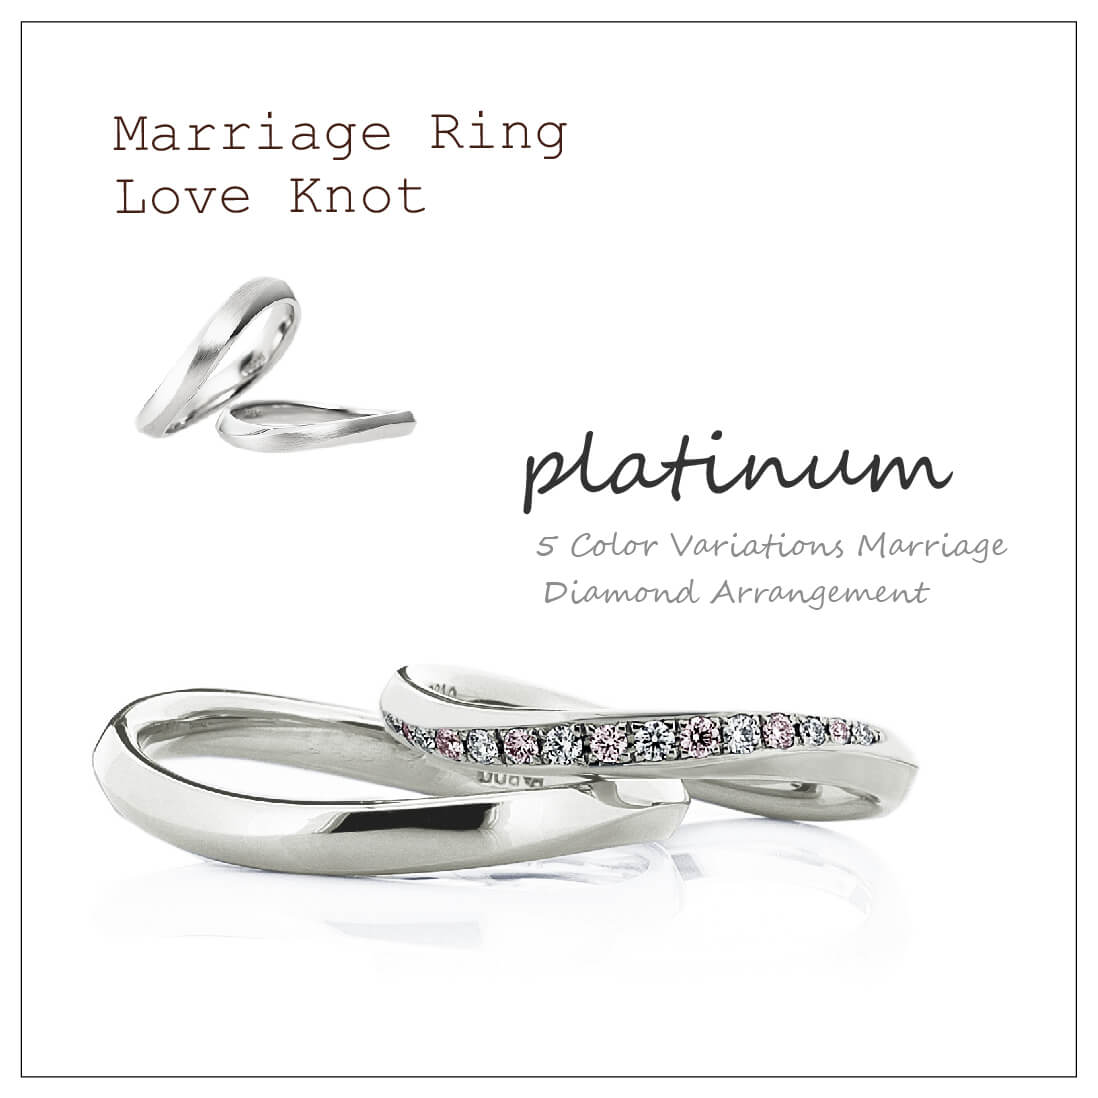 ウエーブのペアの結婚指輪です。2本ともプラチナで、レディースは真ん中にメレダイヤをグラデーションで並べています。